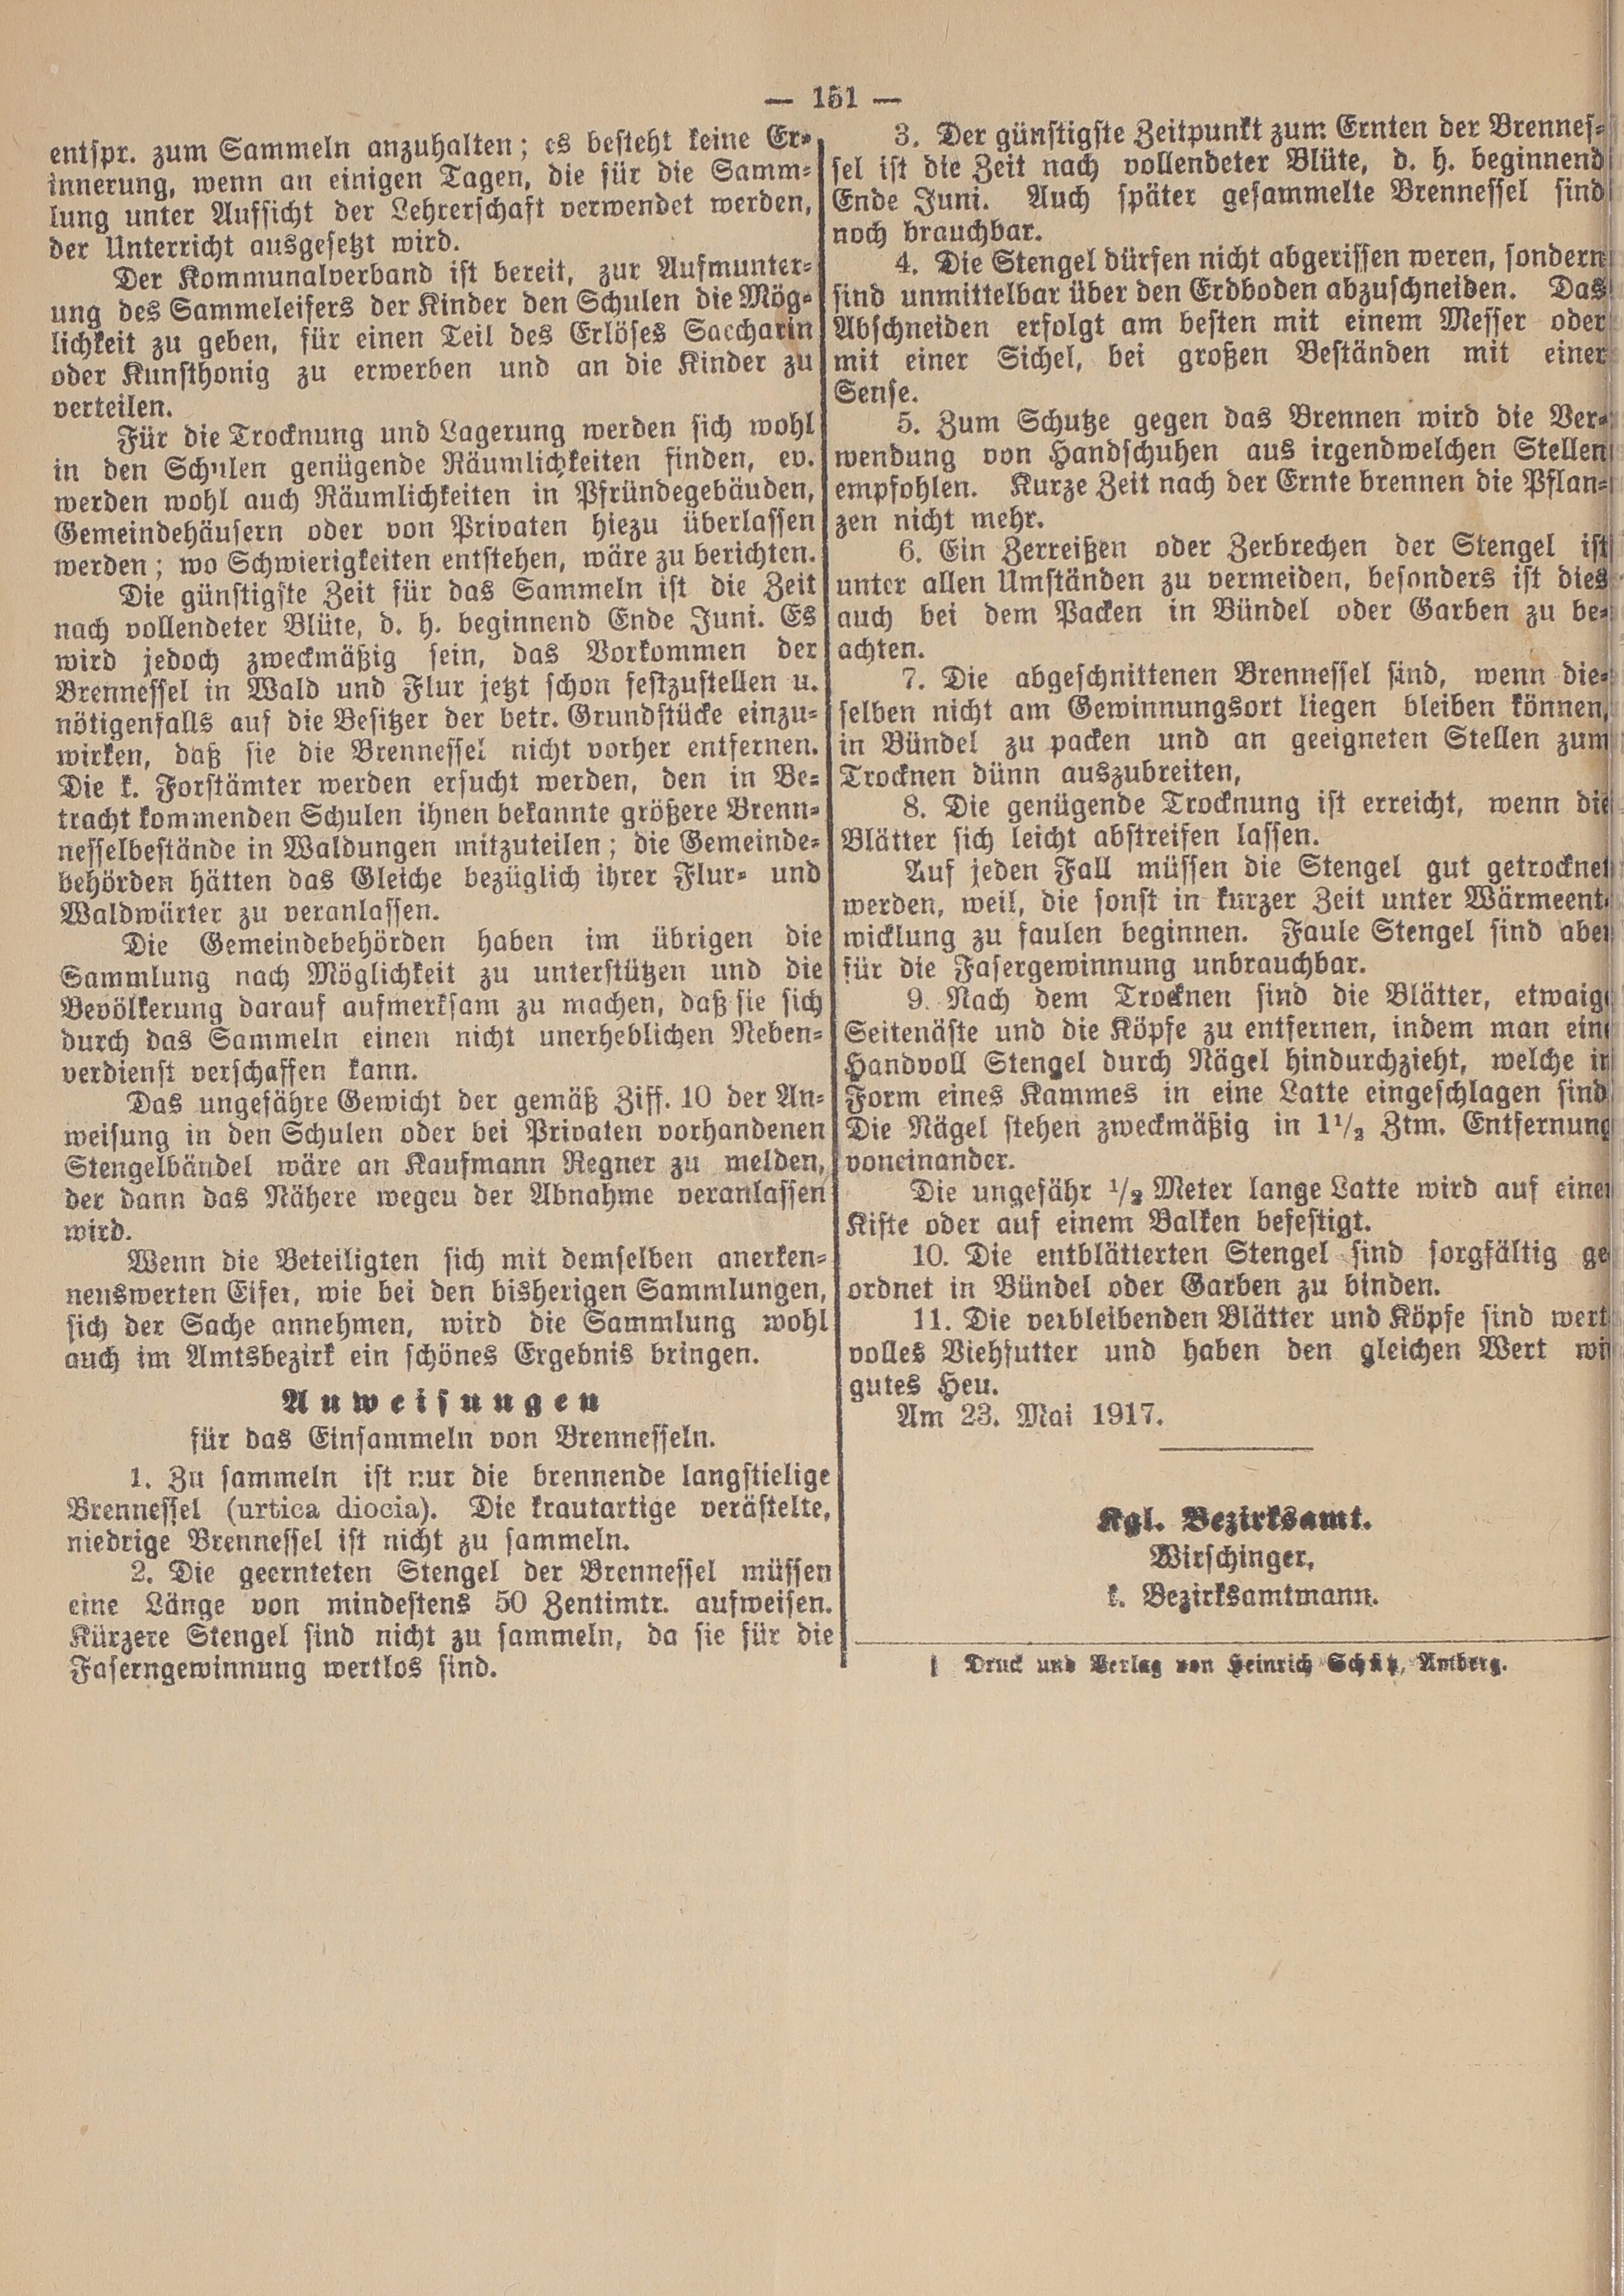 4. amtsblatt-amberg-1917-05-31-n39_1470